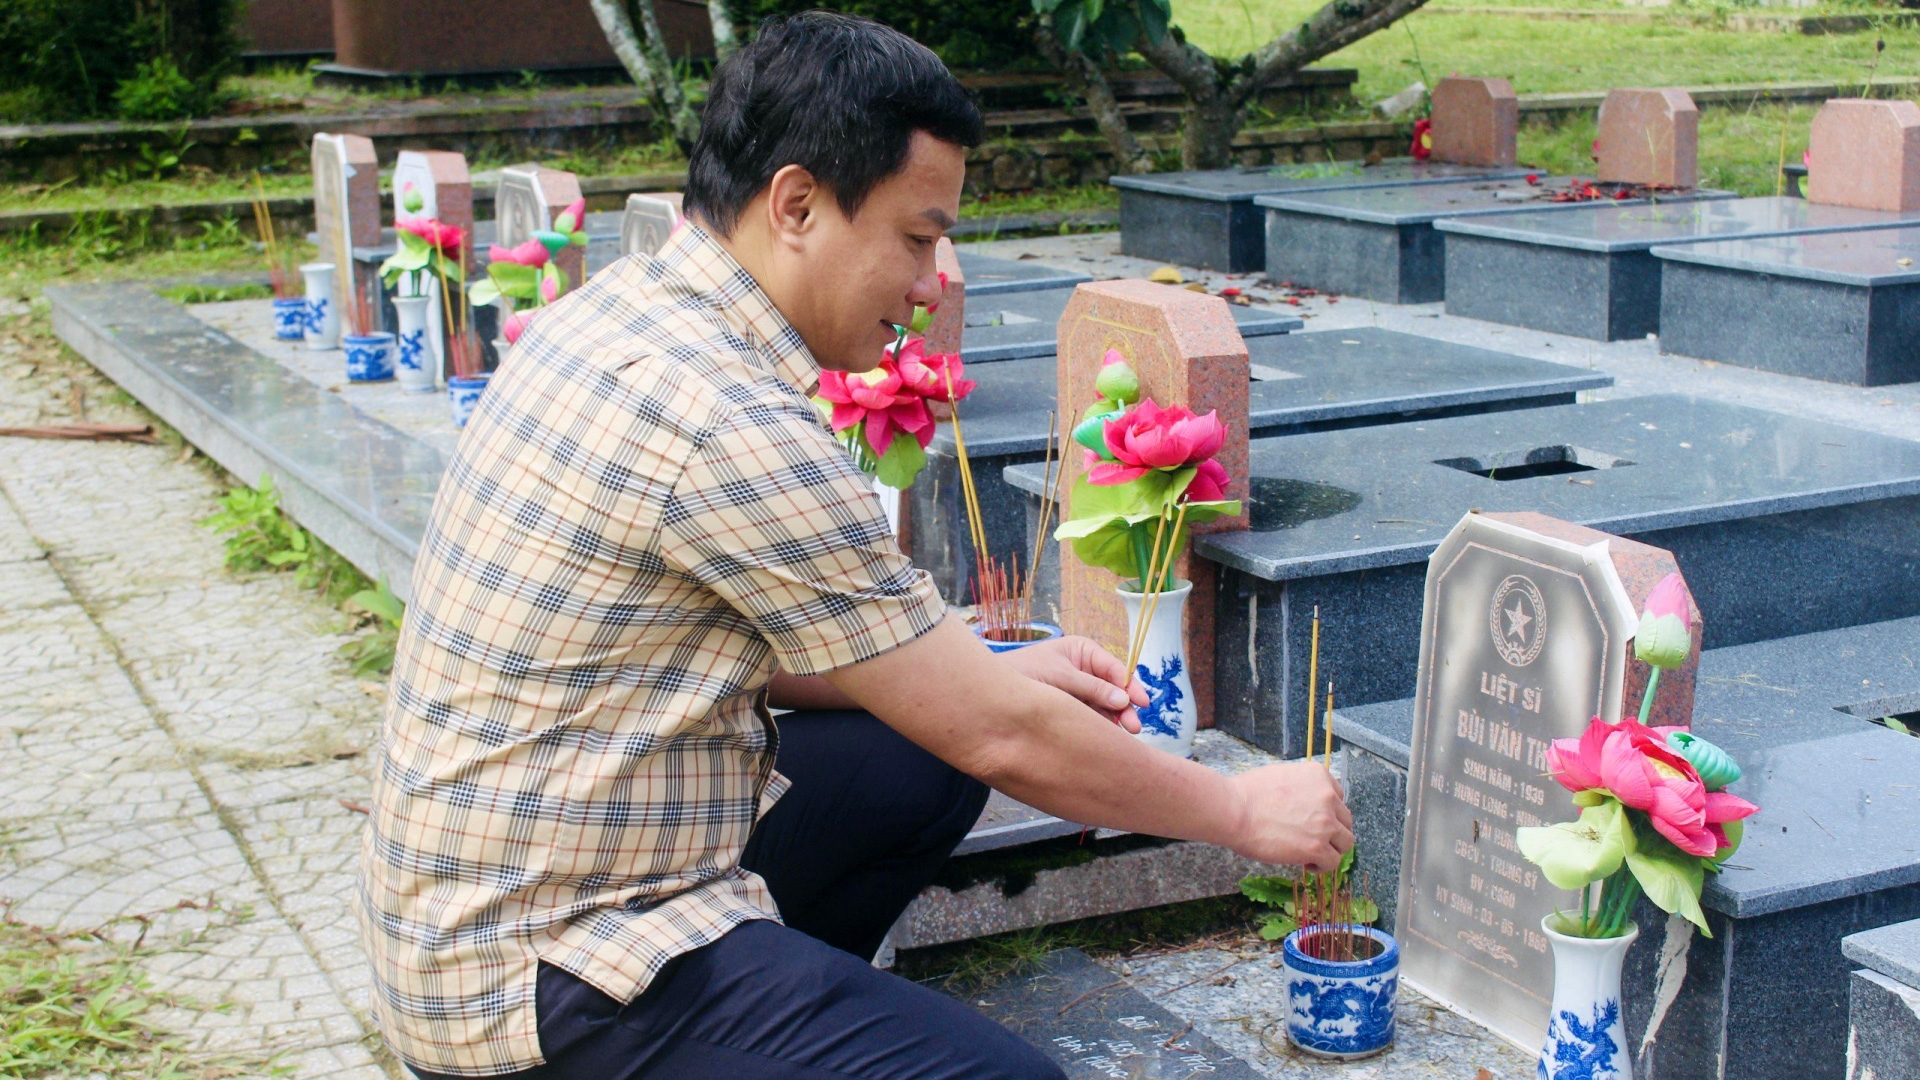 Phó Bí thư Tỉnh uỷ, Chủ tịch UBND tỉnh Hải Dương Triệu Thế Hùng thắp hương phần mộ anh hùng liệt sĩ quê Hải Dương đang yên nghỉ tại Nghĩa trang liệt sĩ Đà Lạt - một trong những nghĩa trang đẹp nhất cả nước